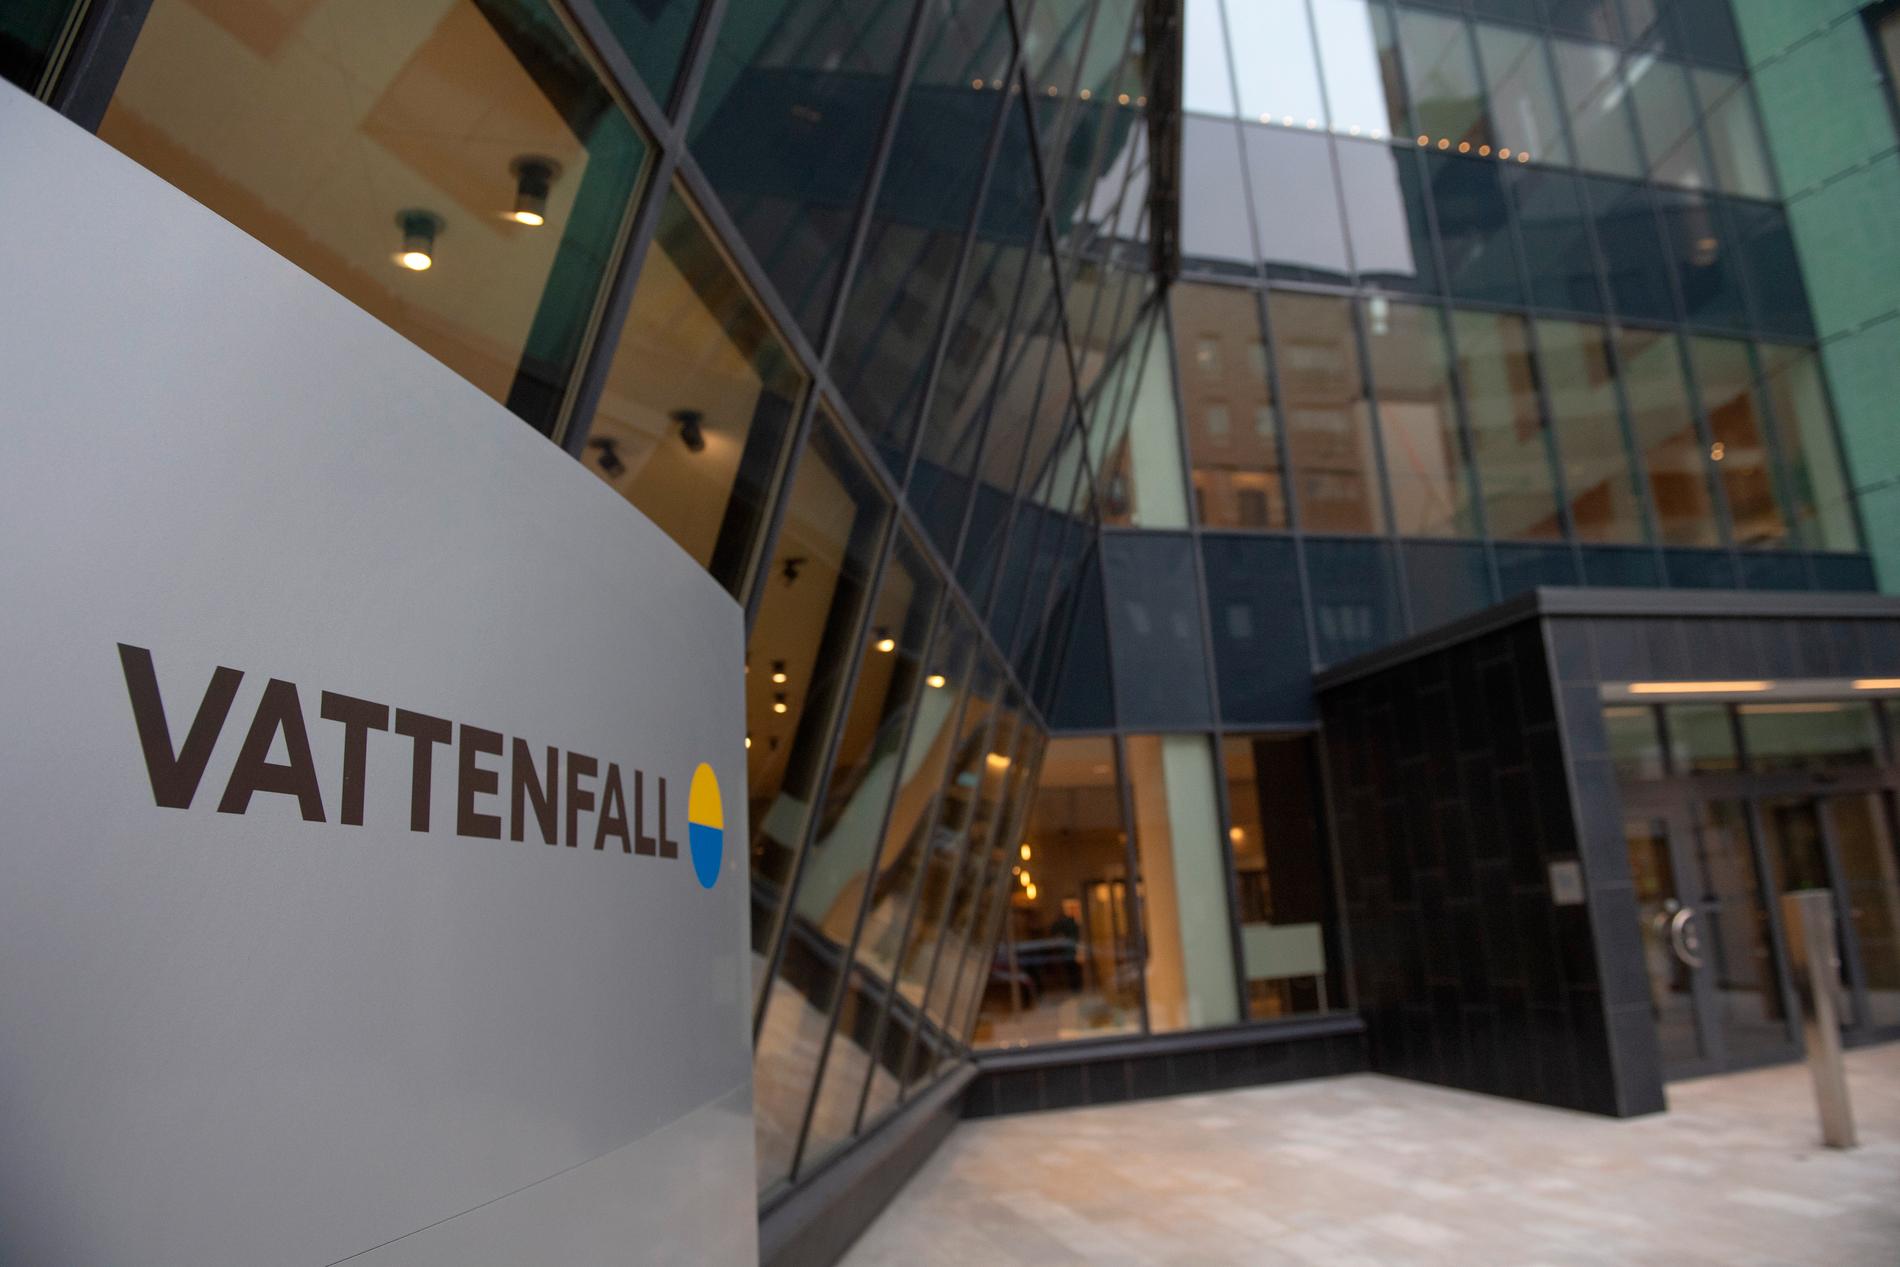 Sedan 1996 då elmarknaden avreglerades i Sveriges konkurrerar Vattenfall med andra bolag. 